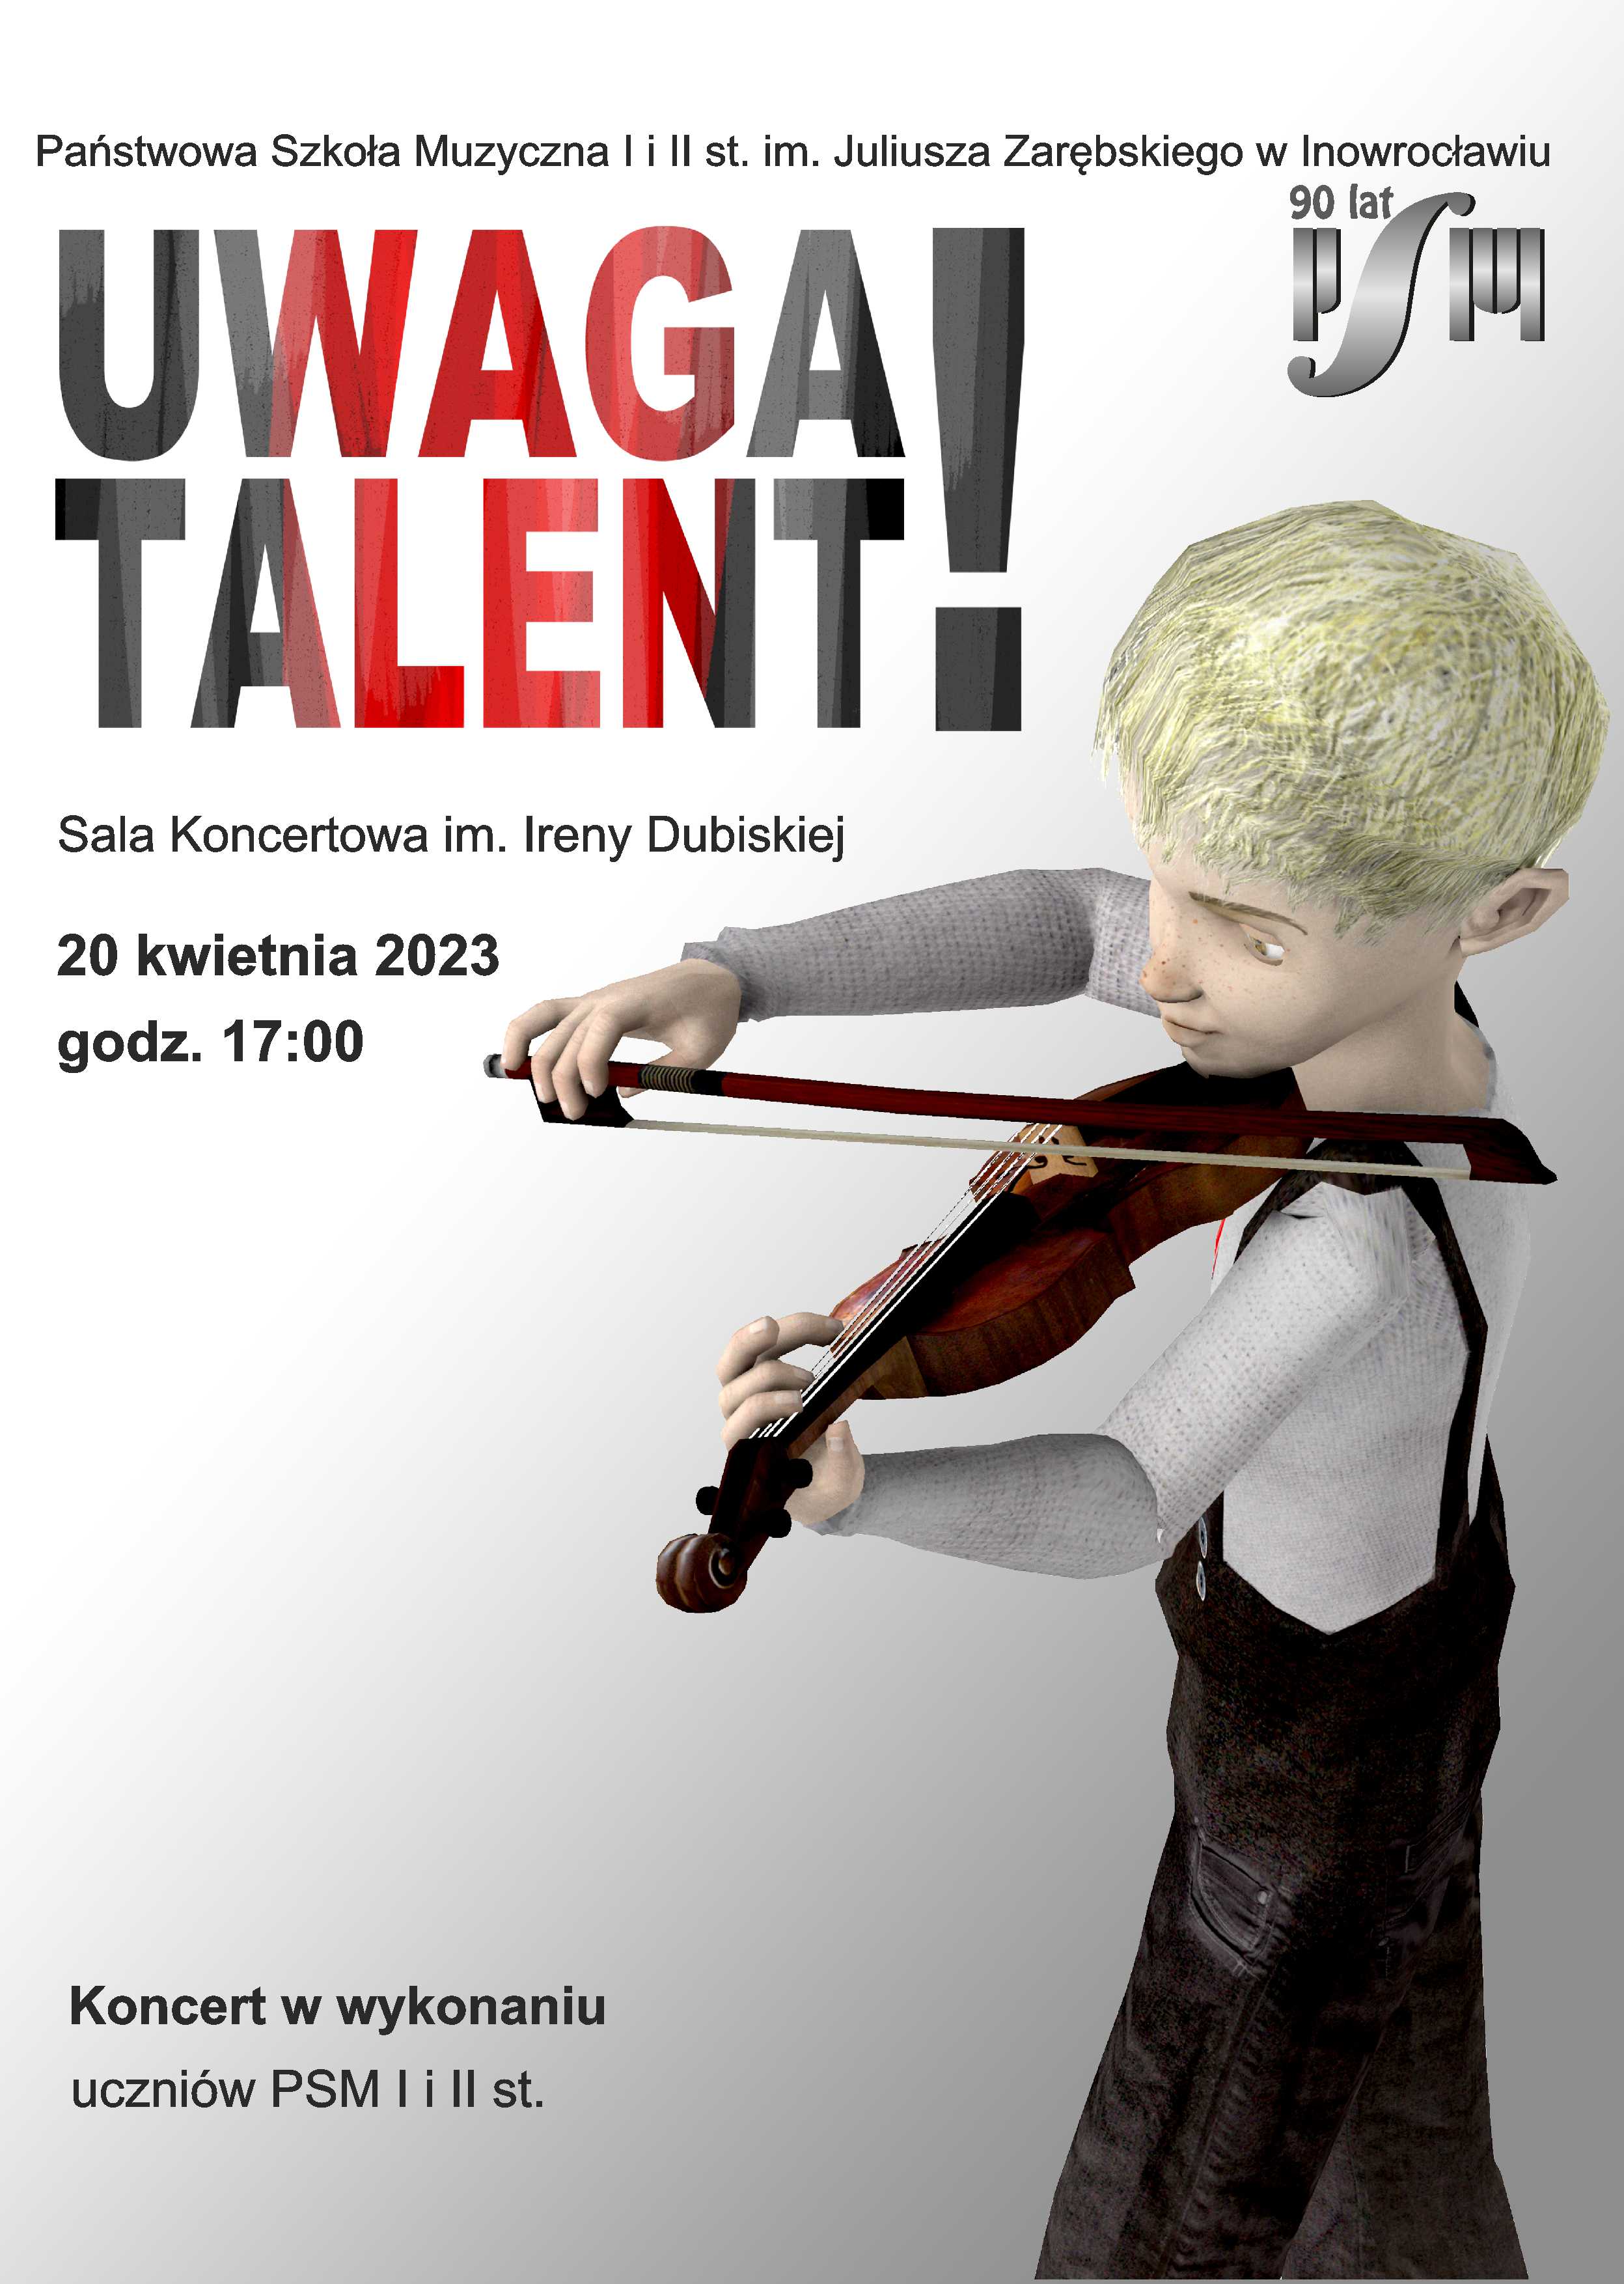 Plakat informujący o koncercie z cyklu Uwaga Talent. Na jasnym tle widoczny z prawej strony rysunek chłopca grającego na skrzypcach. Podana data wydarzenia 20 kwietnia 2023 roku oraz miejsce - sala koncertowa szkoły muzycznej